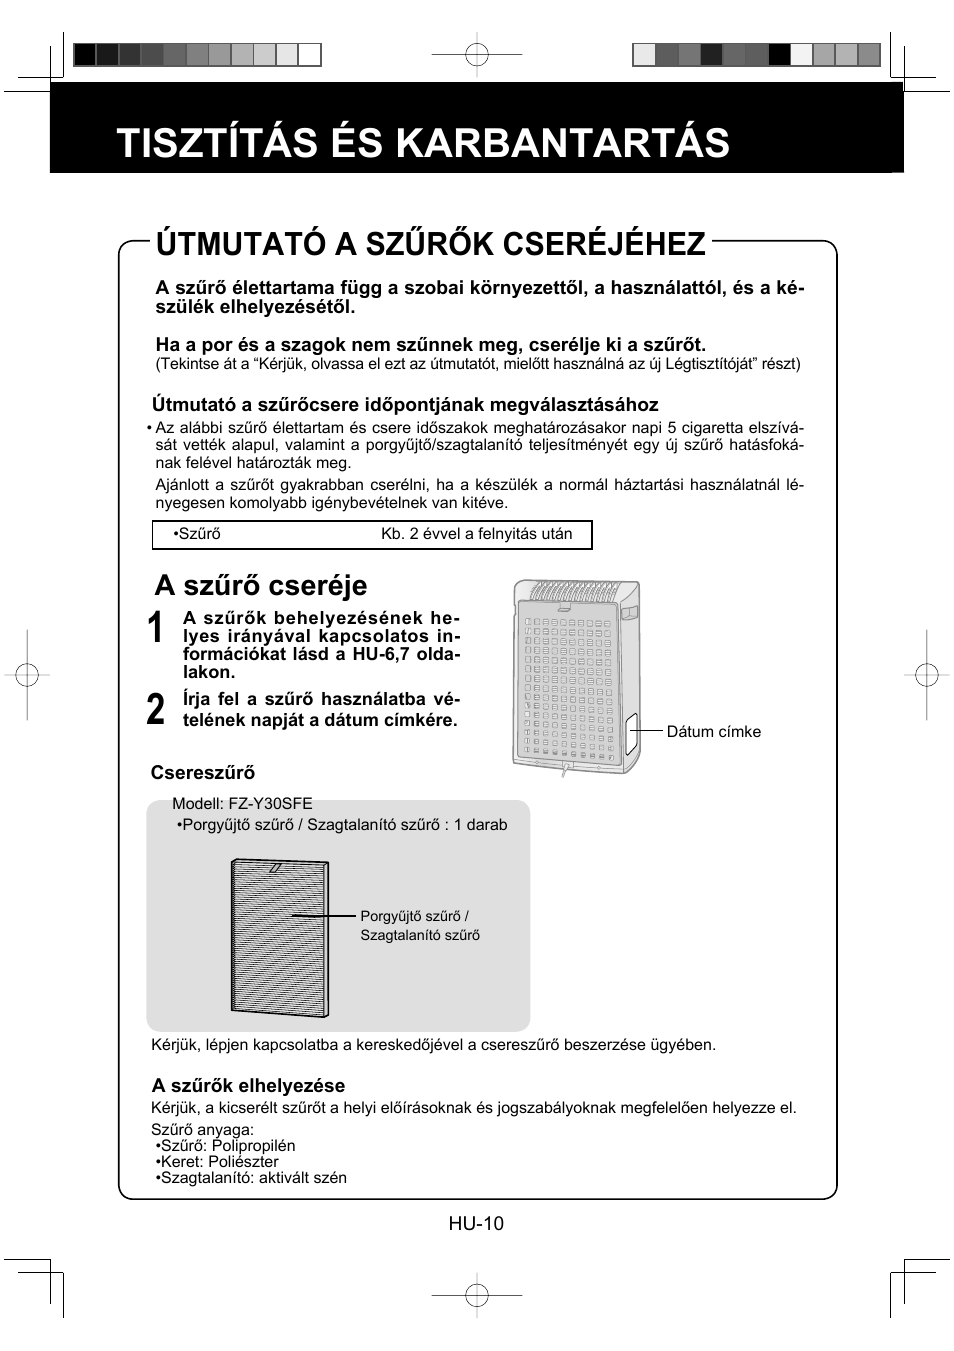 Tisztítás és karbantartás, Útmutató a szűrők cseréjéhez, A szűrő cseréje | Sharp FU-Y30EU User Manual | Page 96 / 113